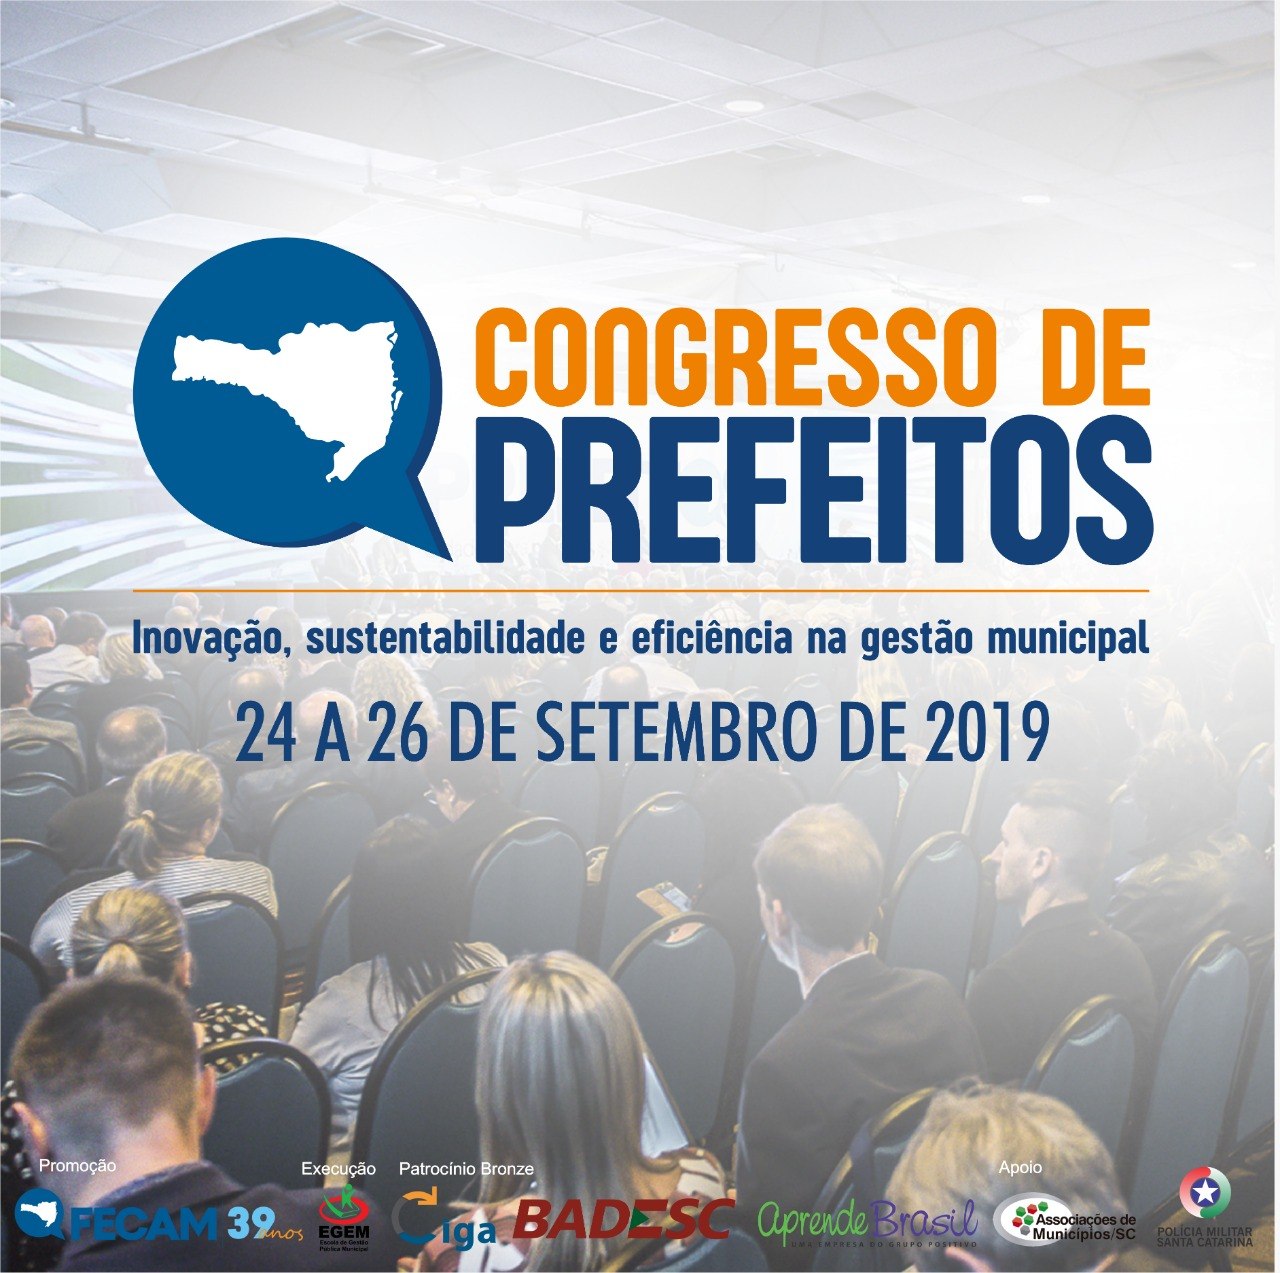 You are currently viewing GRANFPOLIS mobilizada para o Congresso de Prefeitos